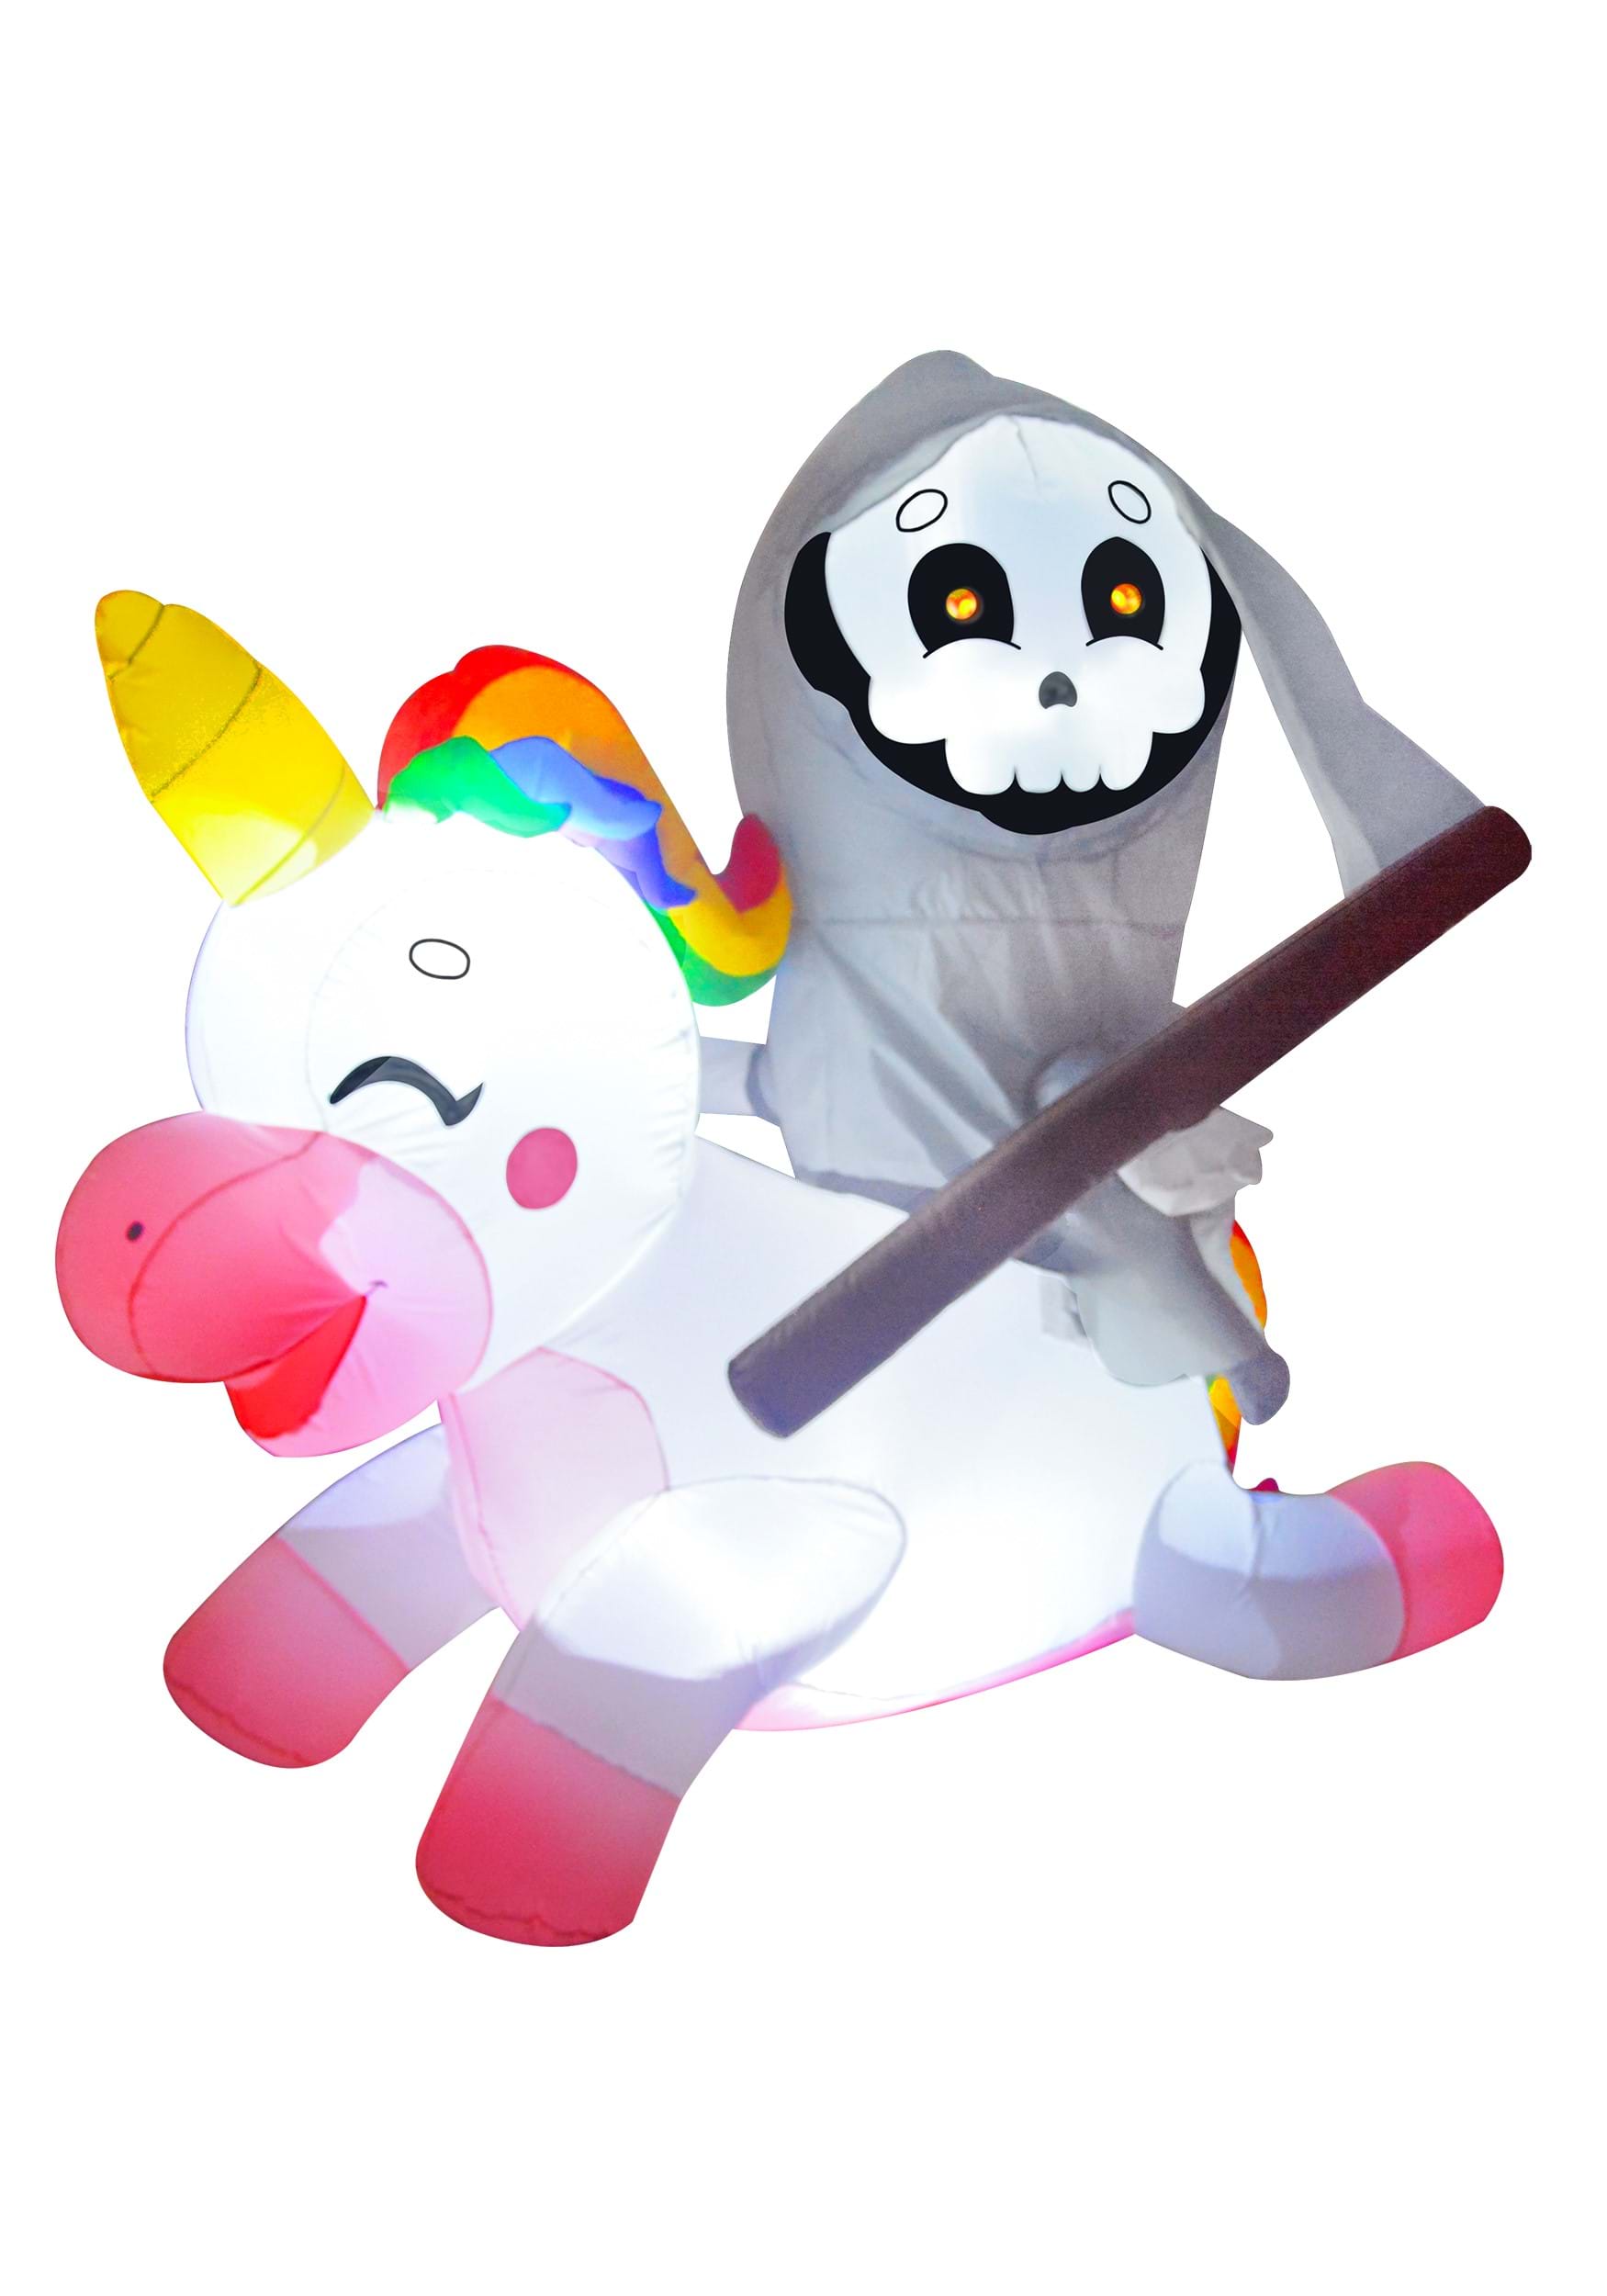 Reaper de 5 pies de altura montando una decoración inflable de unicornio Multicolor Colombia